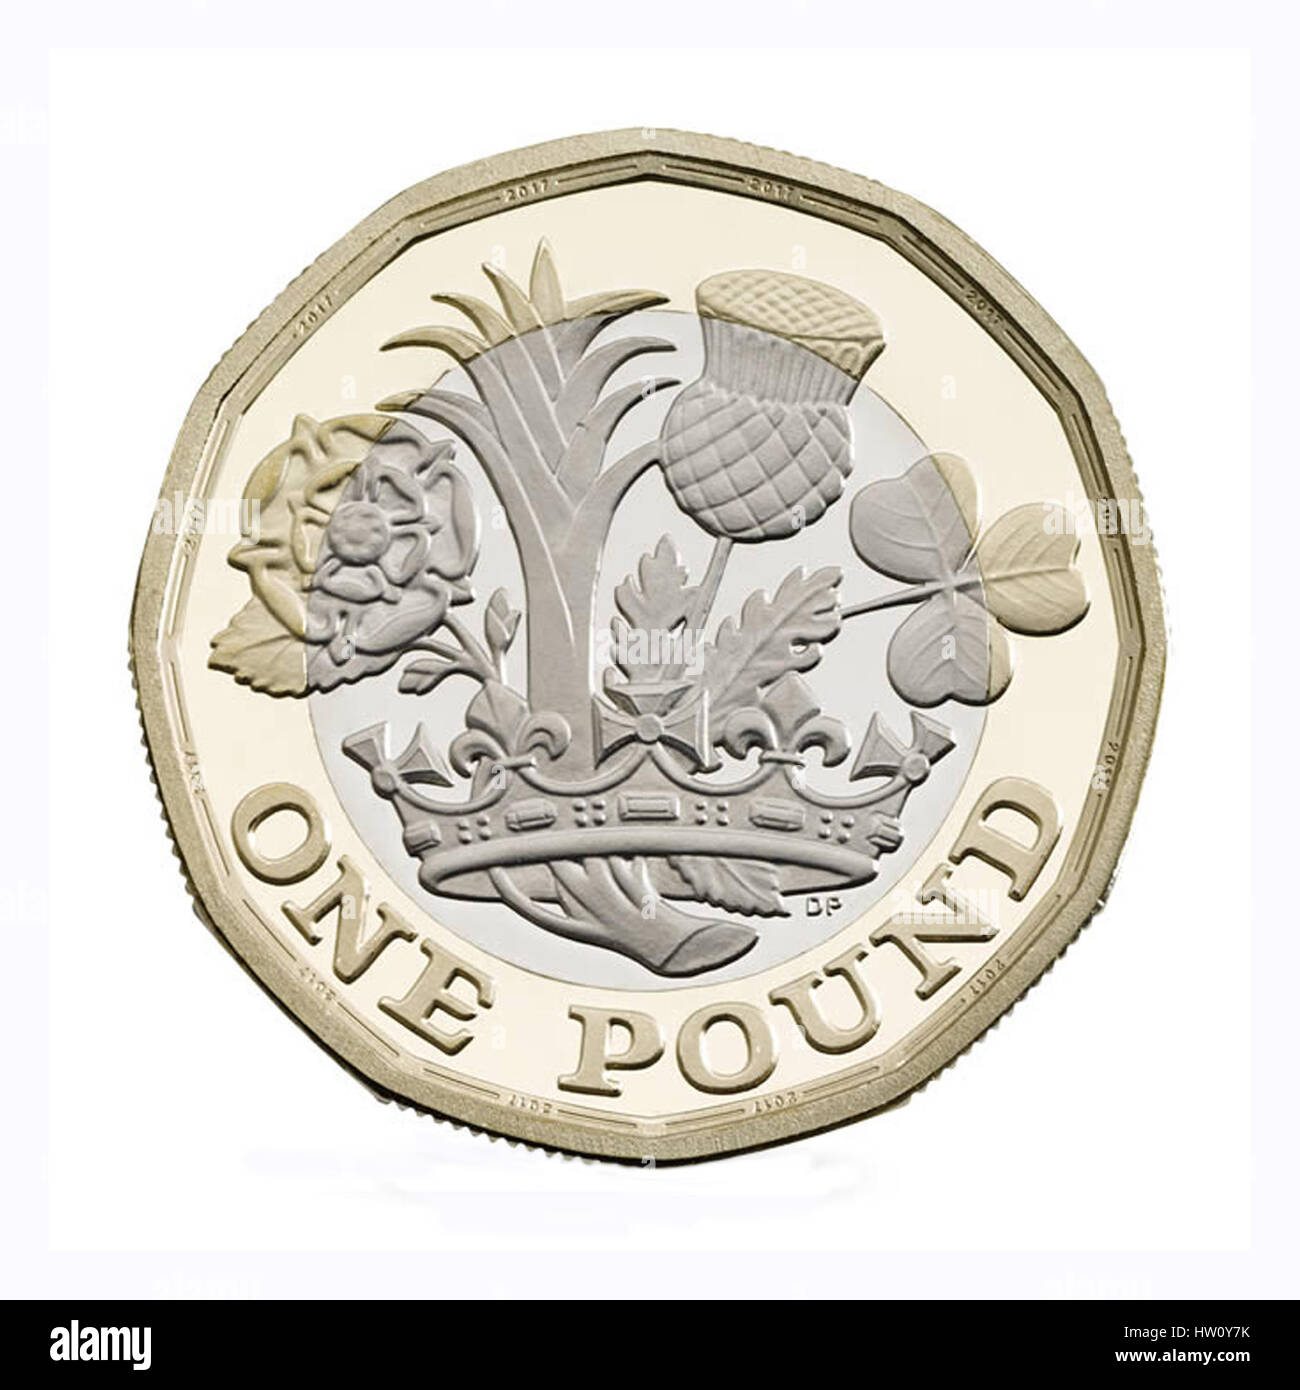 2017 englische Pfund-Münze isoliert auf weißem Hintergrund. Die neue UK £1 Münze treten Zirkulation im März 2017, und The Royal Mint produziert 1,5 Milliarden der neuen Münzen. Stockfoto